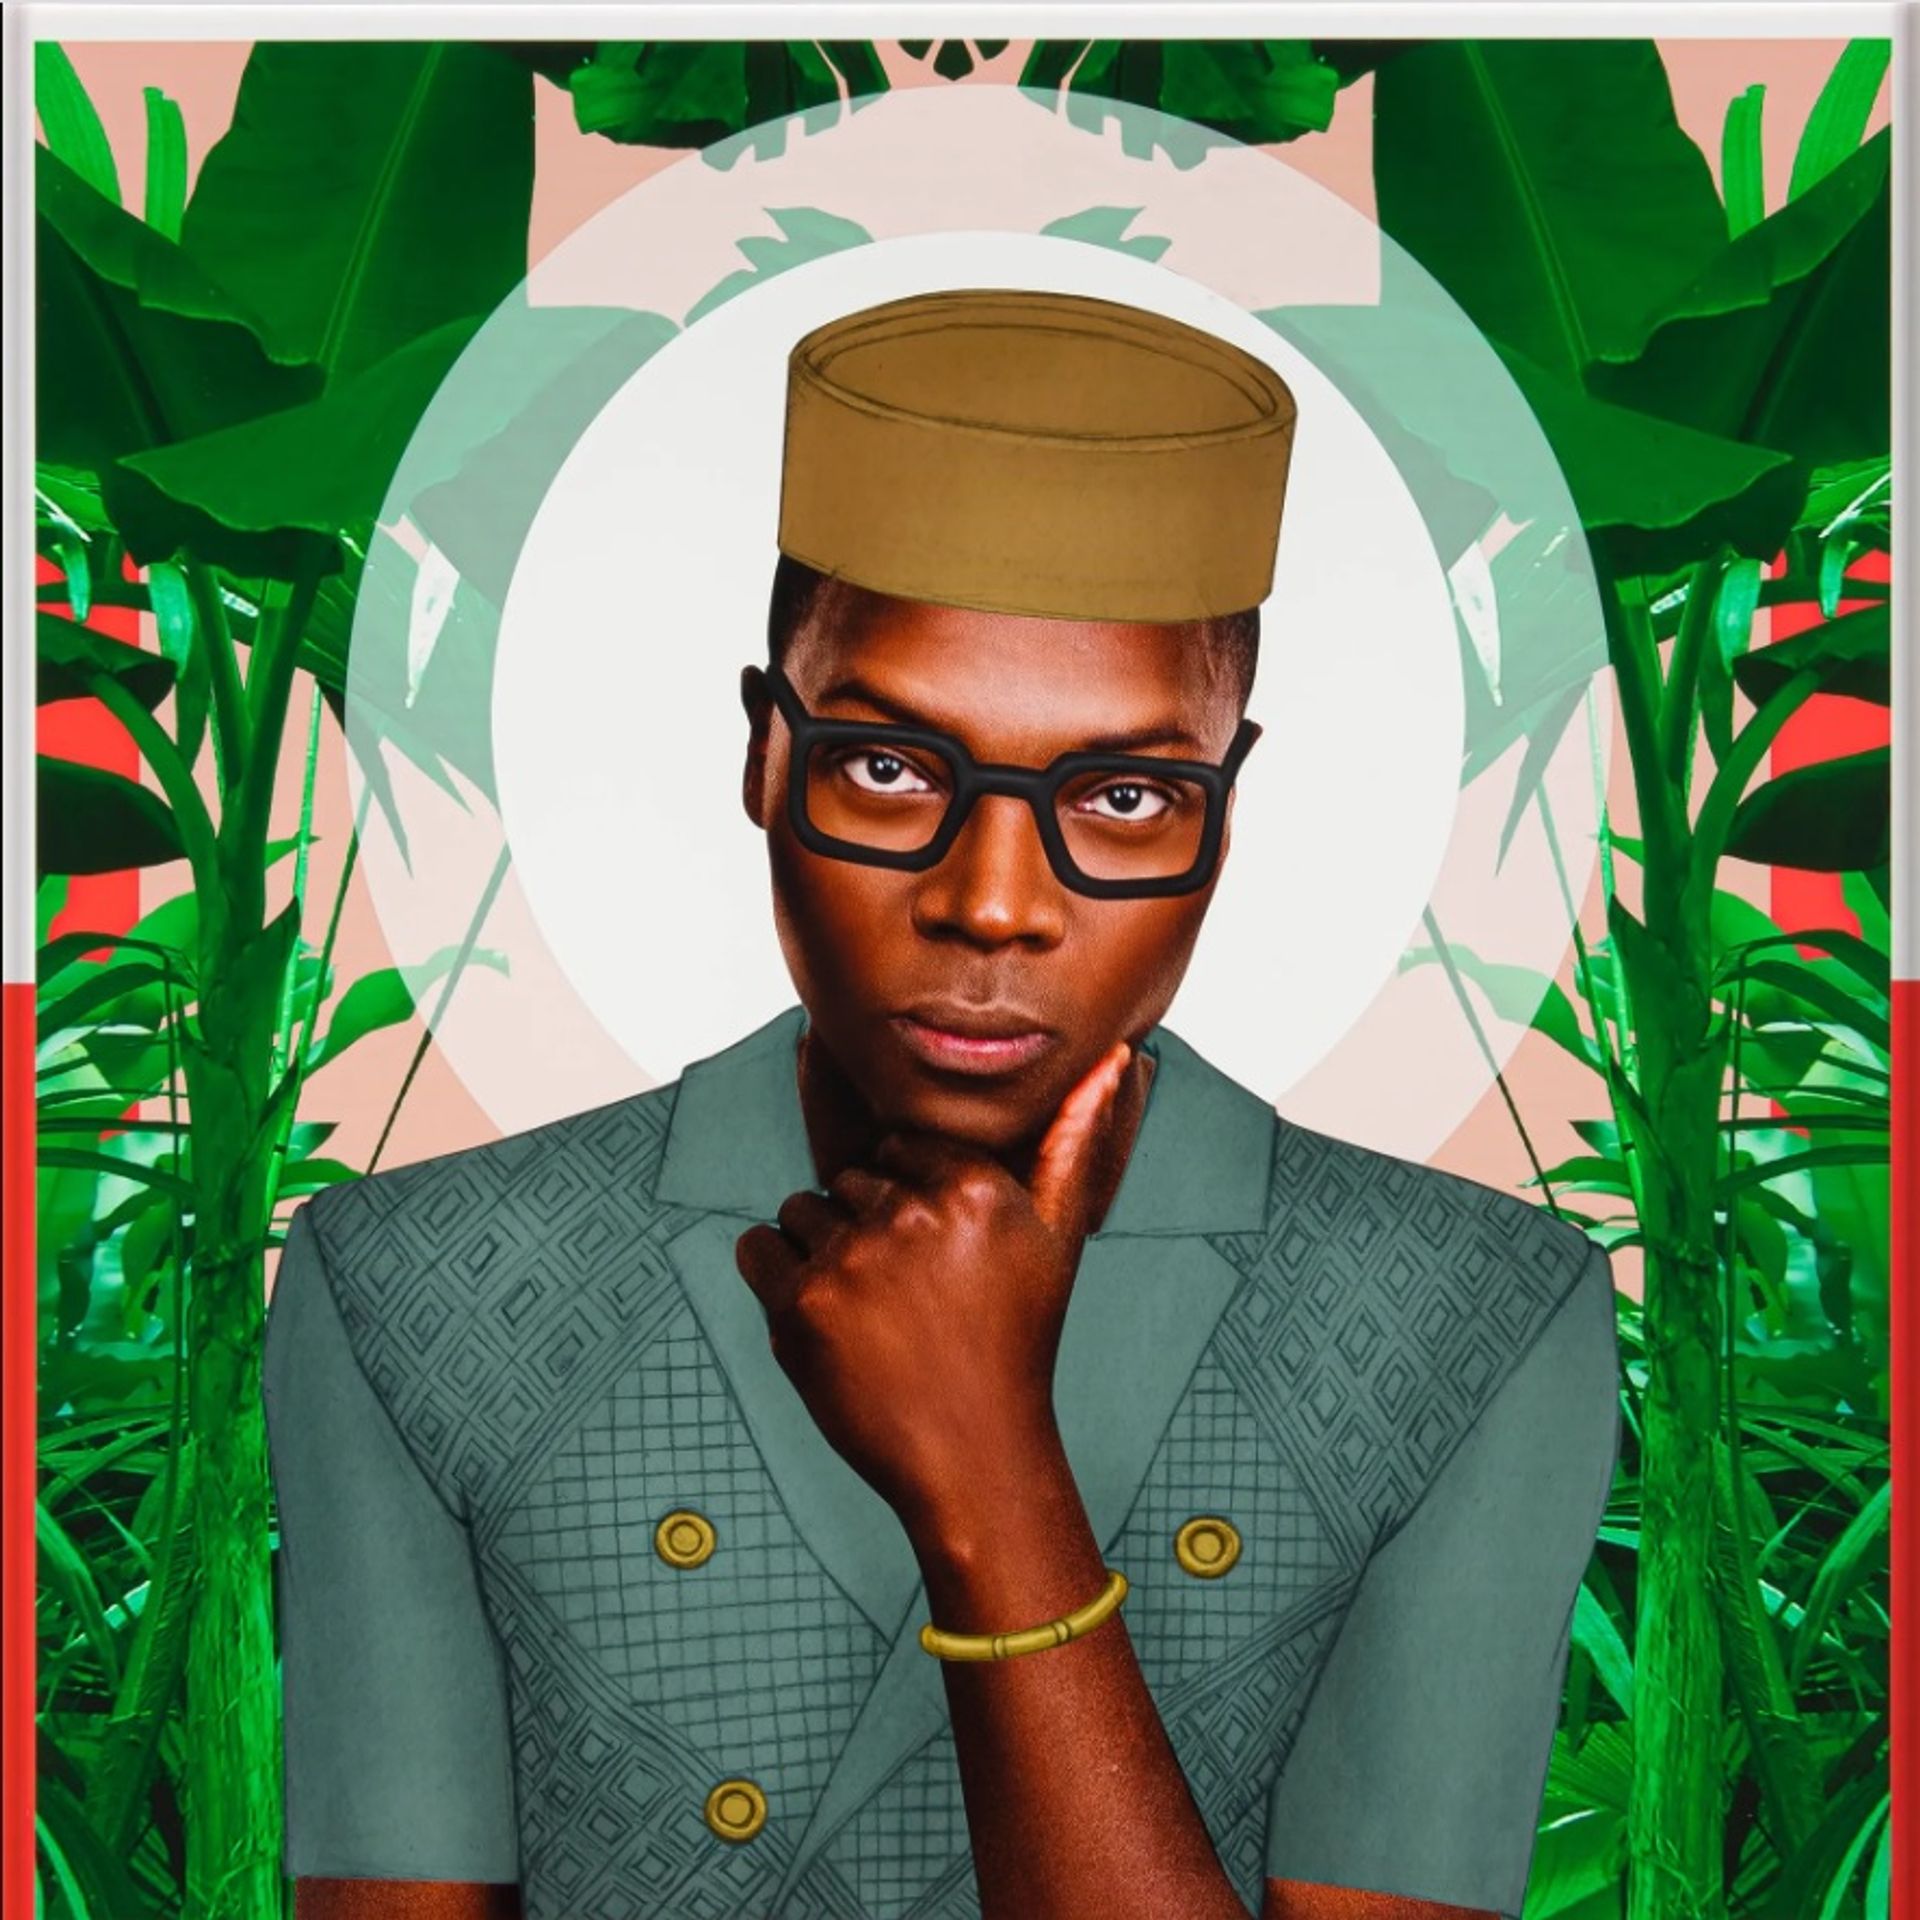 סדרת The Affogbolo, Him Green, Affogbolo של פייר-כריסטוף גאם (2015), חלק מהמכירה החדשה של שטראוס ושות' "קולות אוצרות: אמנות מודרנית ועכשווית מאפריקה"

באדיבות שטראוס ושות'